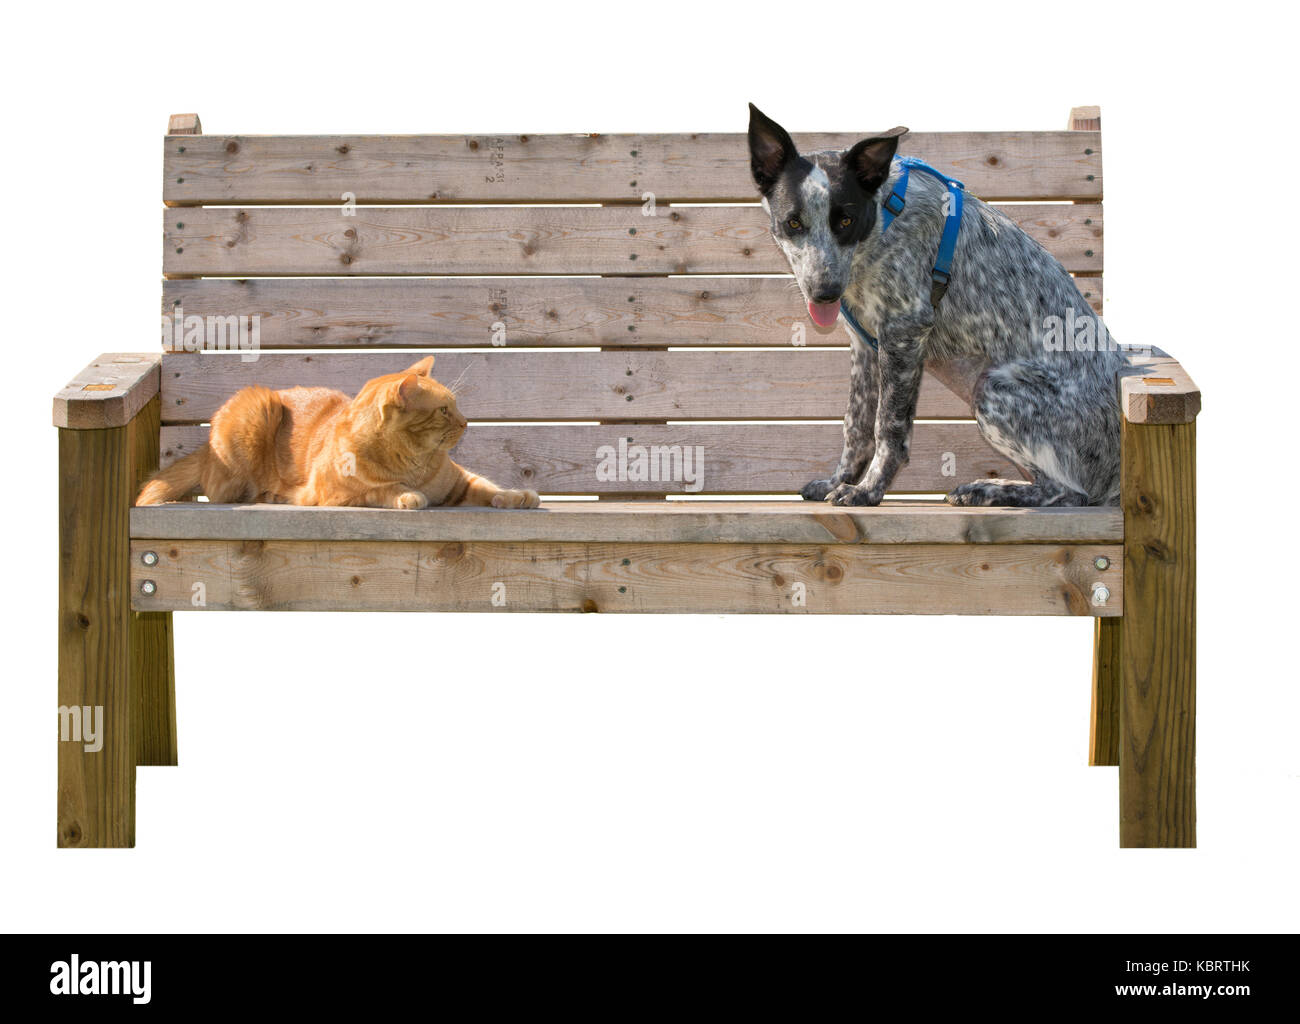 Lo zenzero tabby cat e una in bianco e nero spotted dog seduto su una panca in legno, isolato su bianco Foto Stock